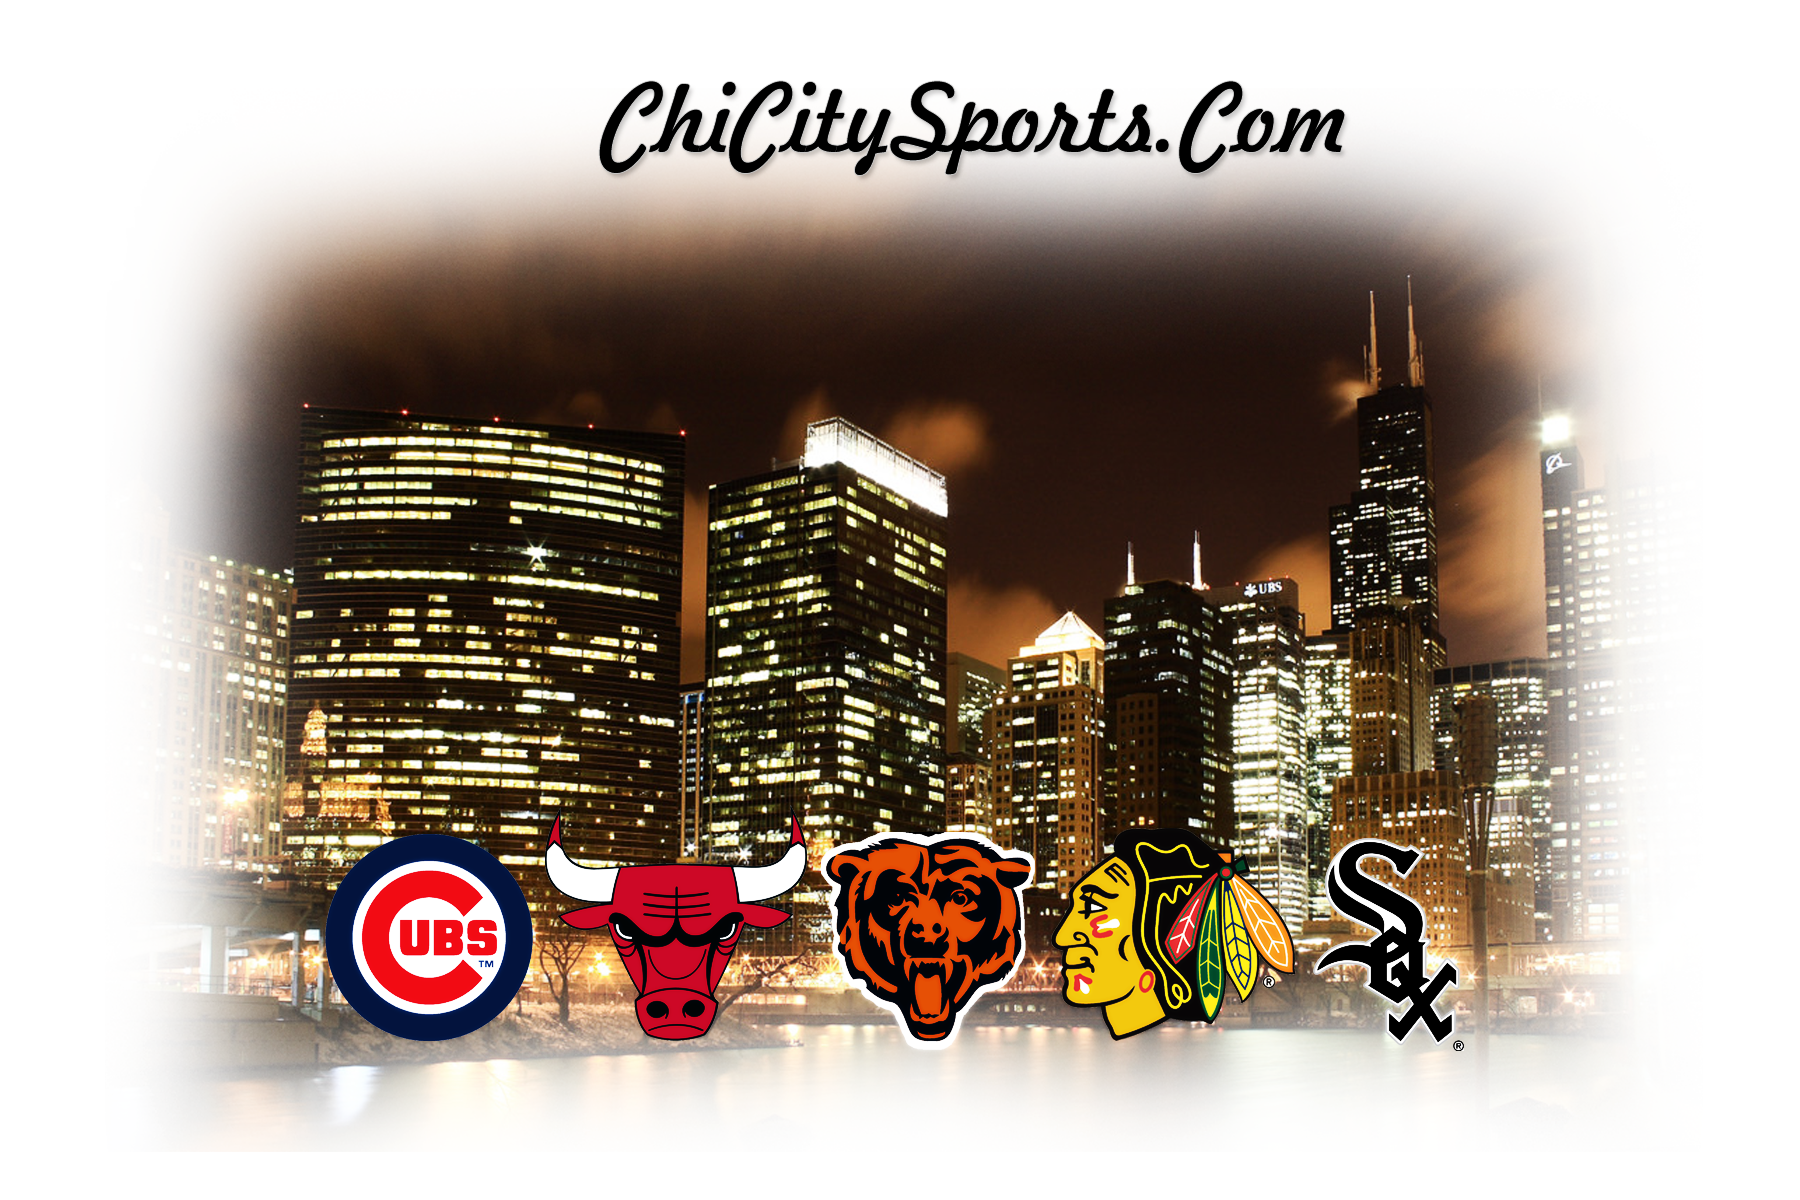 ChiCitySports.Com Wallpaper + New Logo | ChiCitySports.com Chicago ...